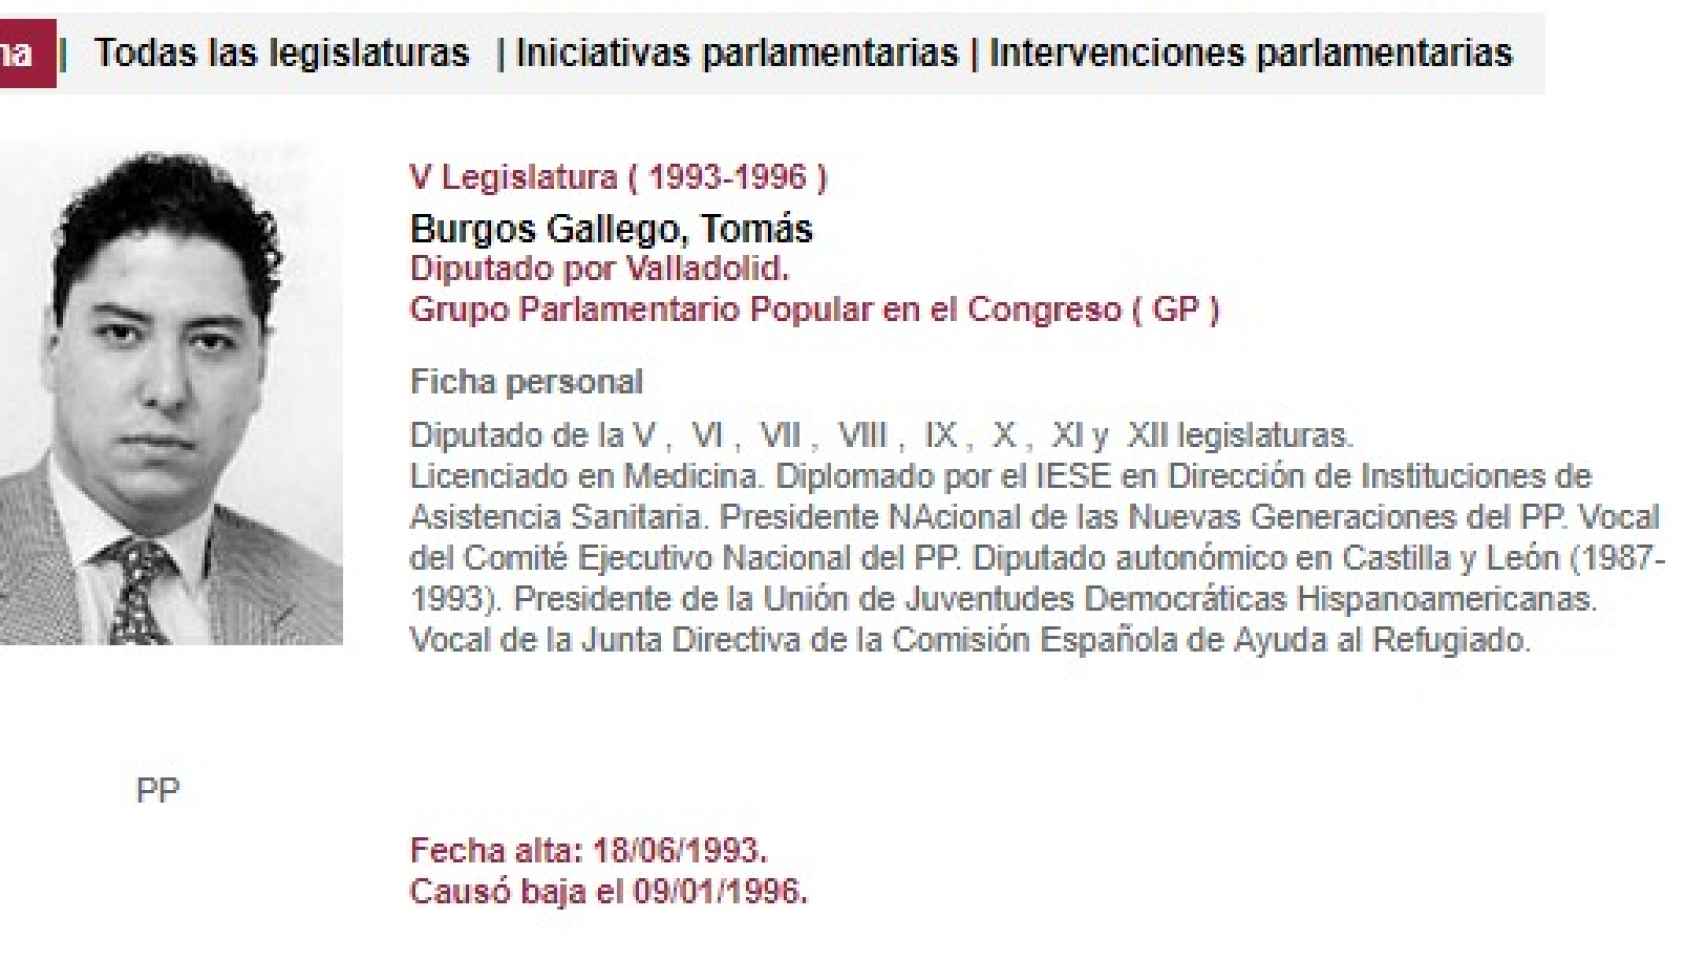 Primera ficha de Tomás Burgos en el Congreso con la licenciatura que no tiene.